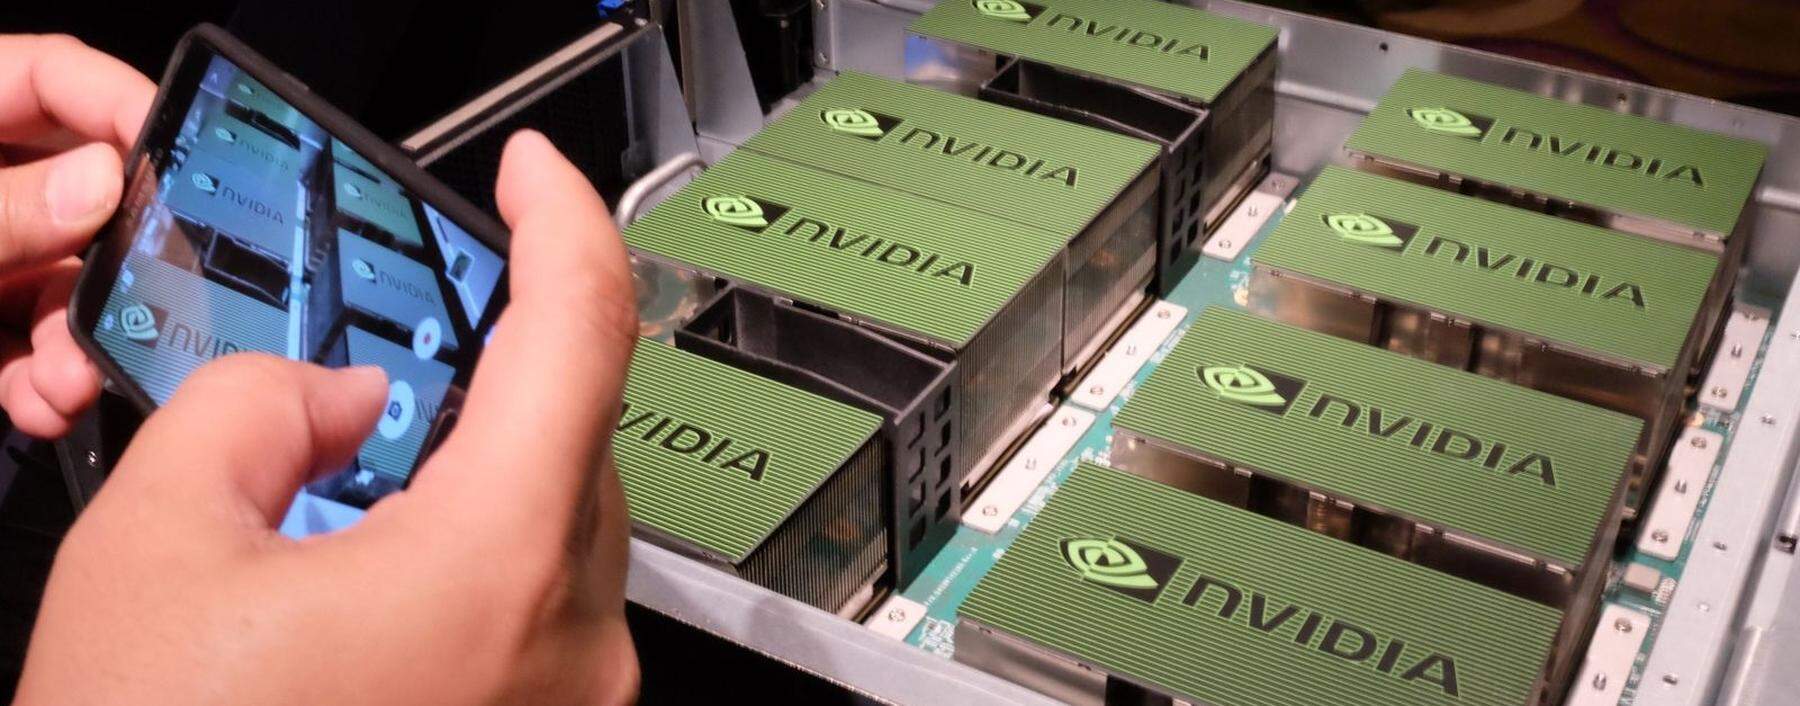 Großkonzerne wie Nvidia haben sich zuletzt deutlich besser entwickelt als kleinere Firmen. 